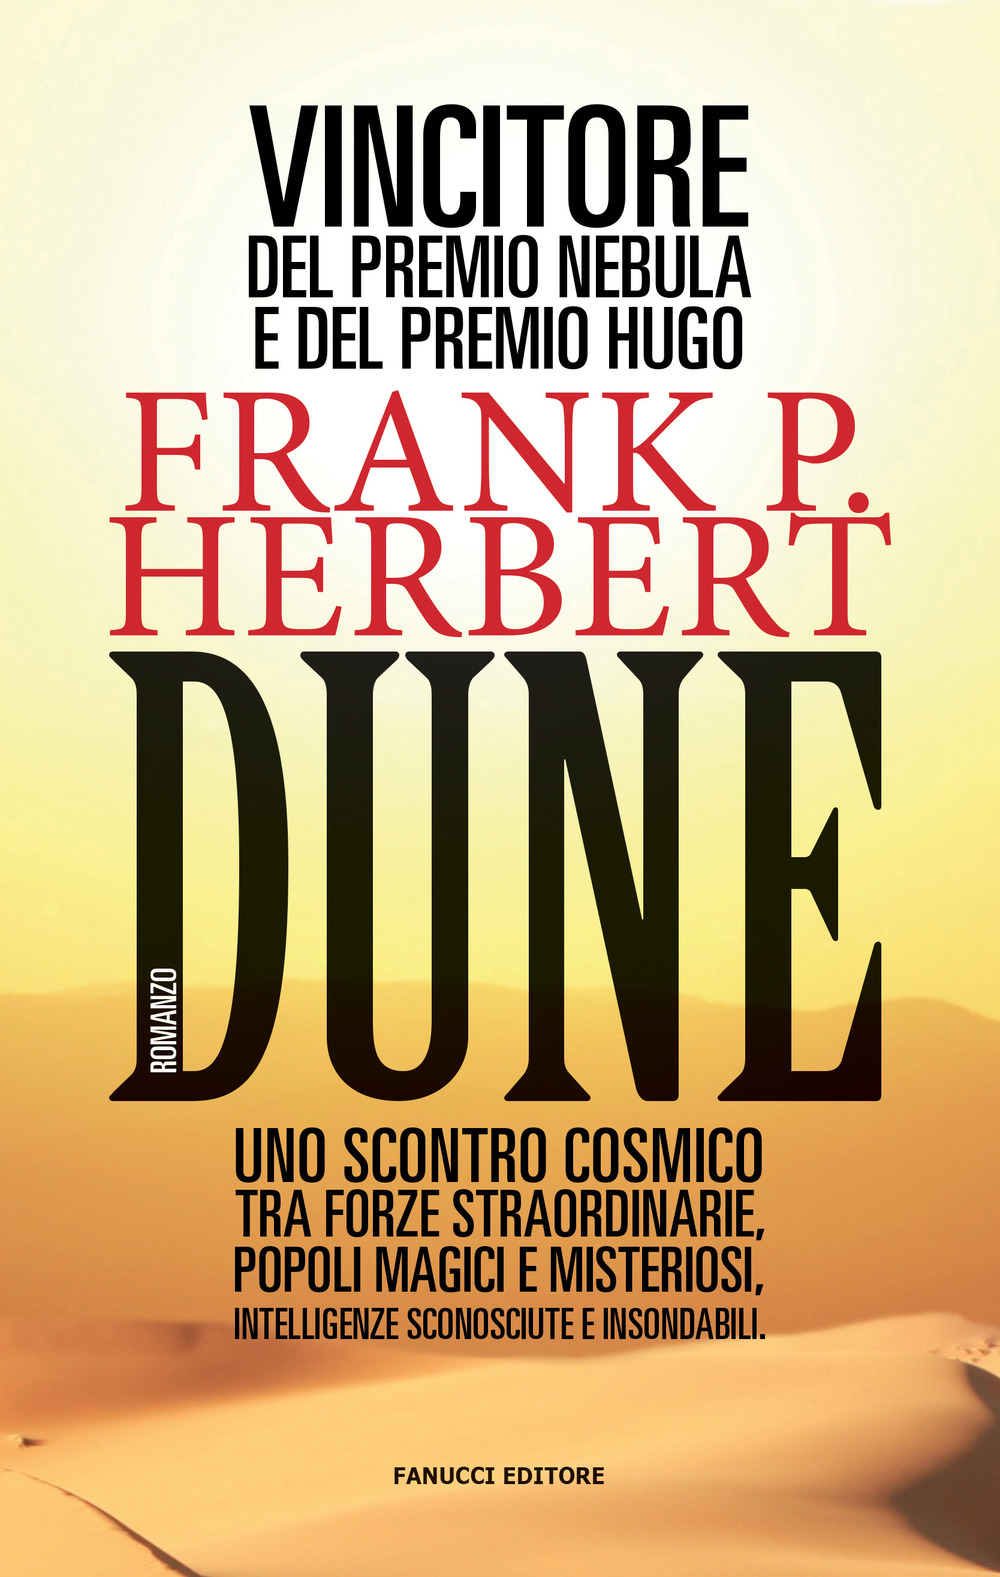 Libri Frank Herbert - Dune. Il Ciclo Di Dune Vol 01 NUOVO SIGILLATO, EDIZIONE DEL 14/11/2019 SUBITO DISPONIBILE